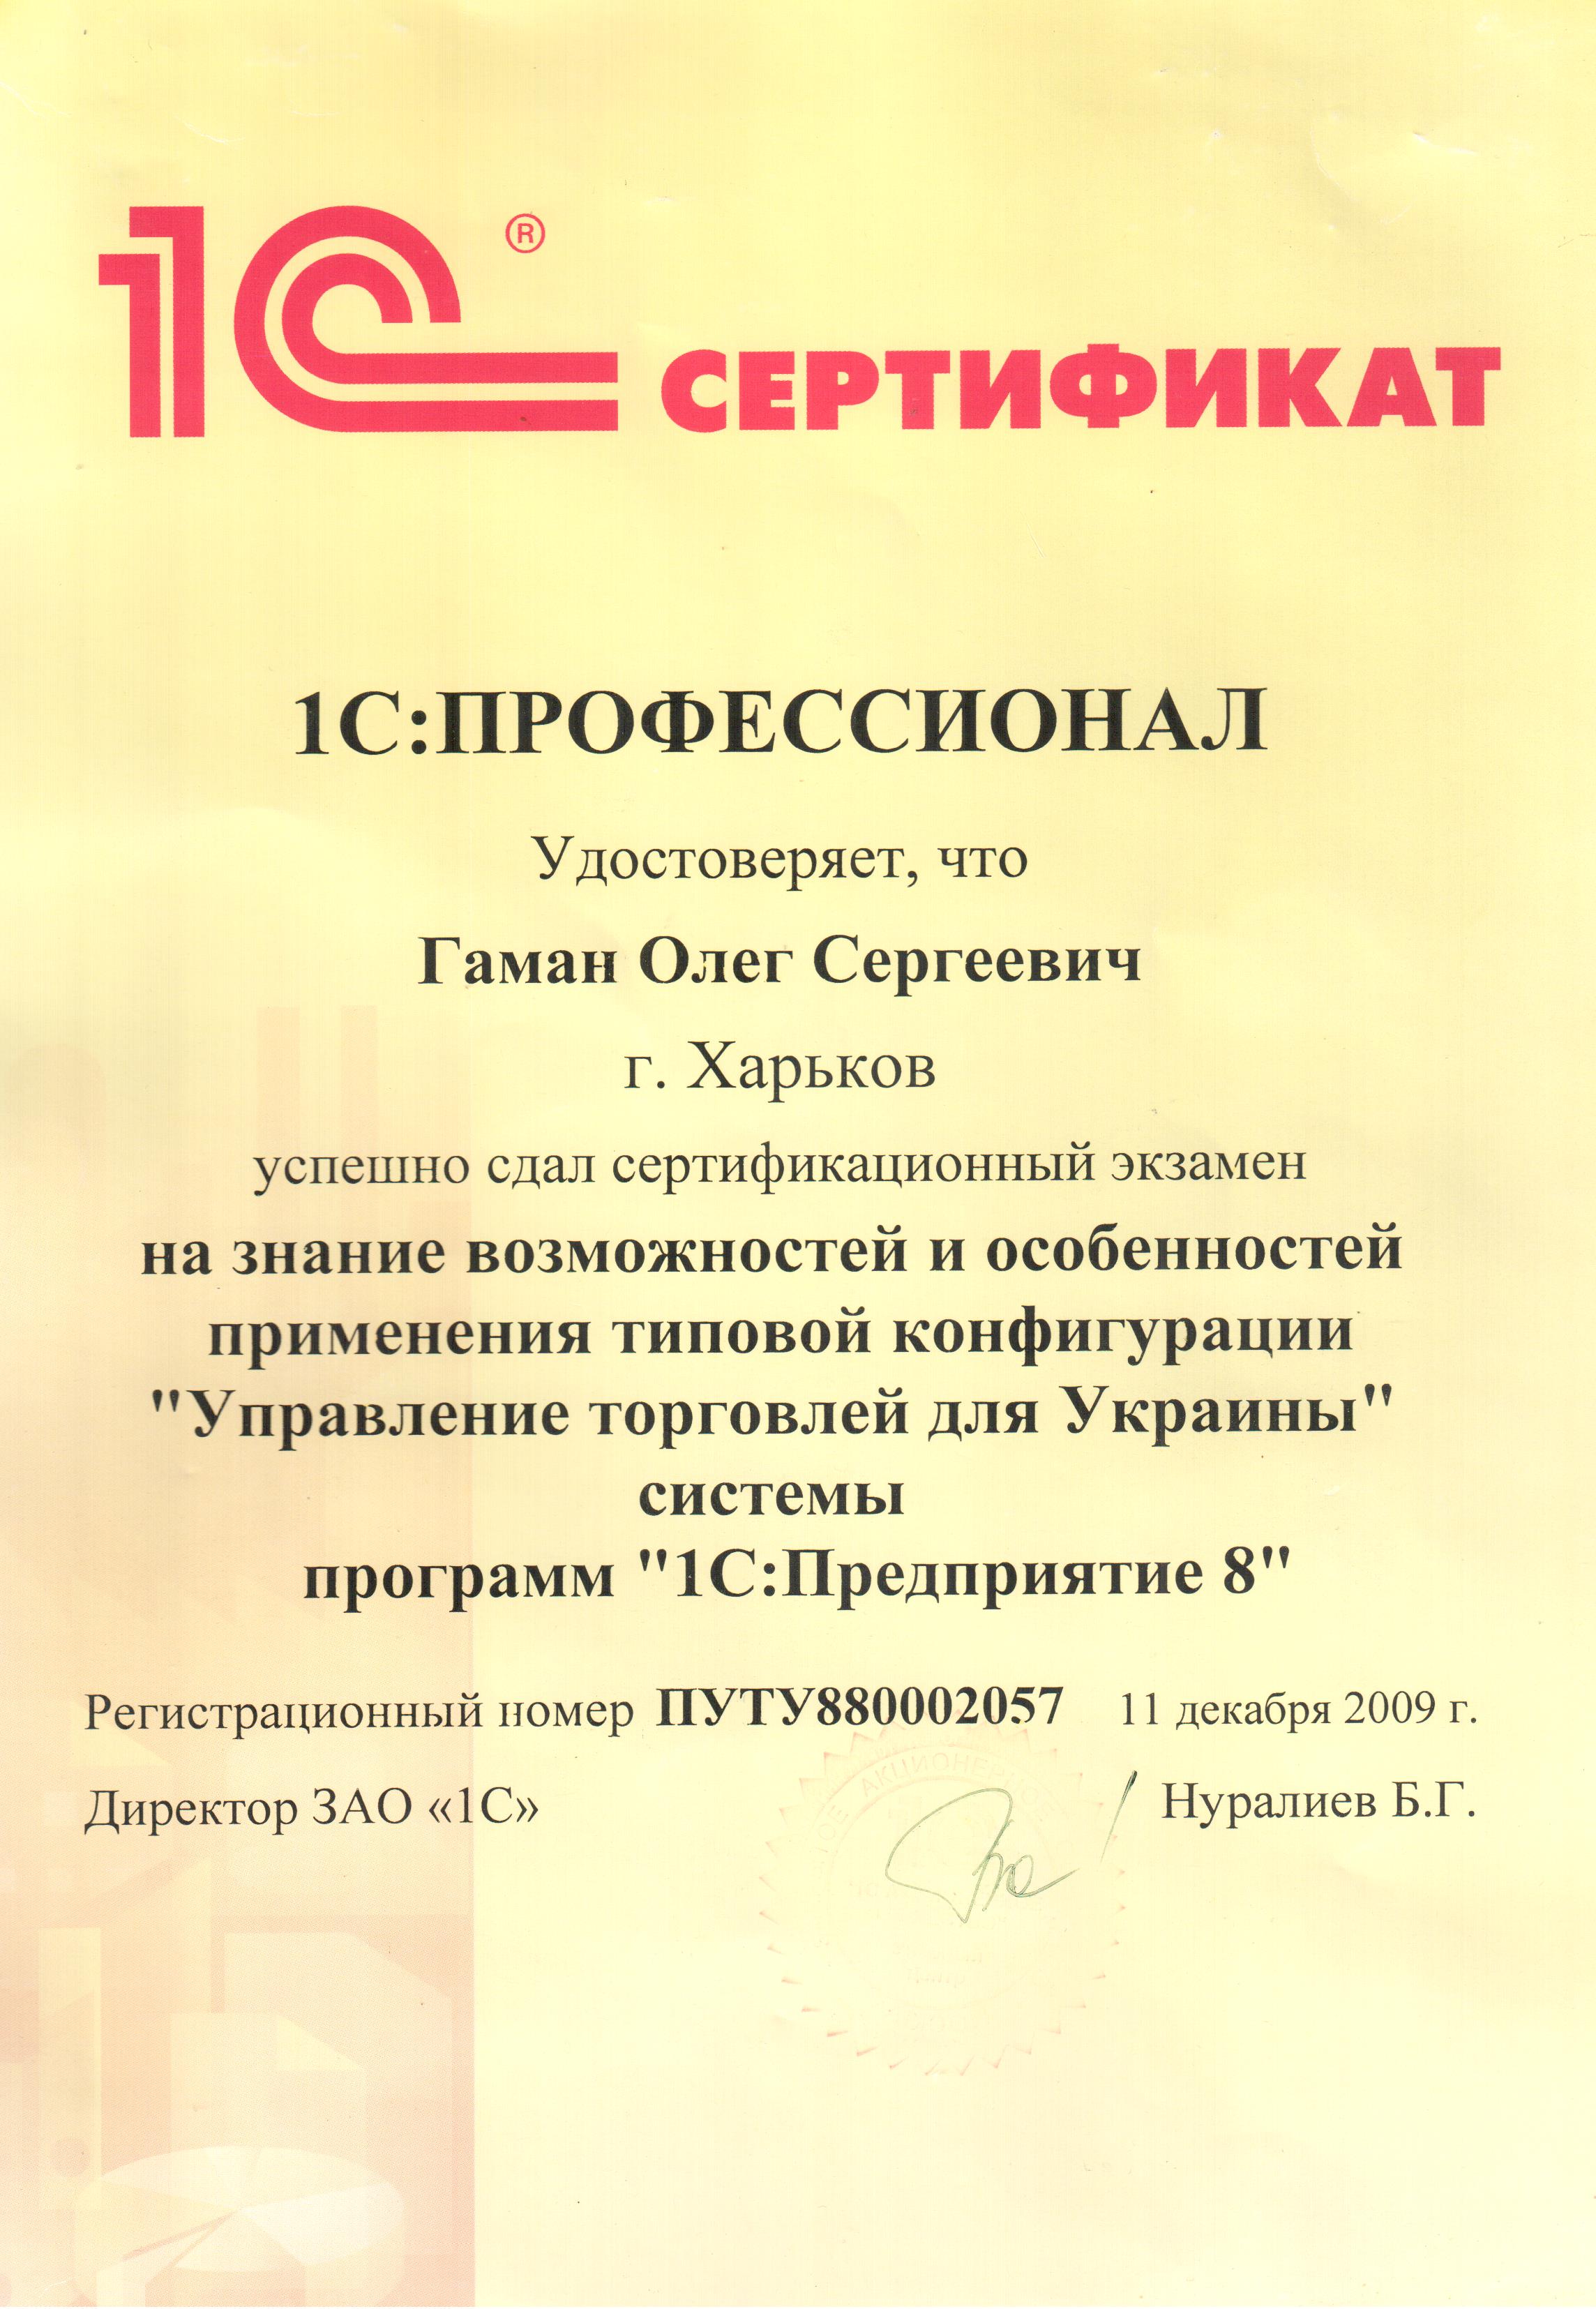 Сертификат 1С:Профессионал (Управление торговлей)